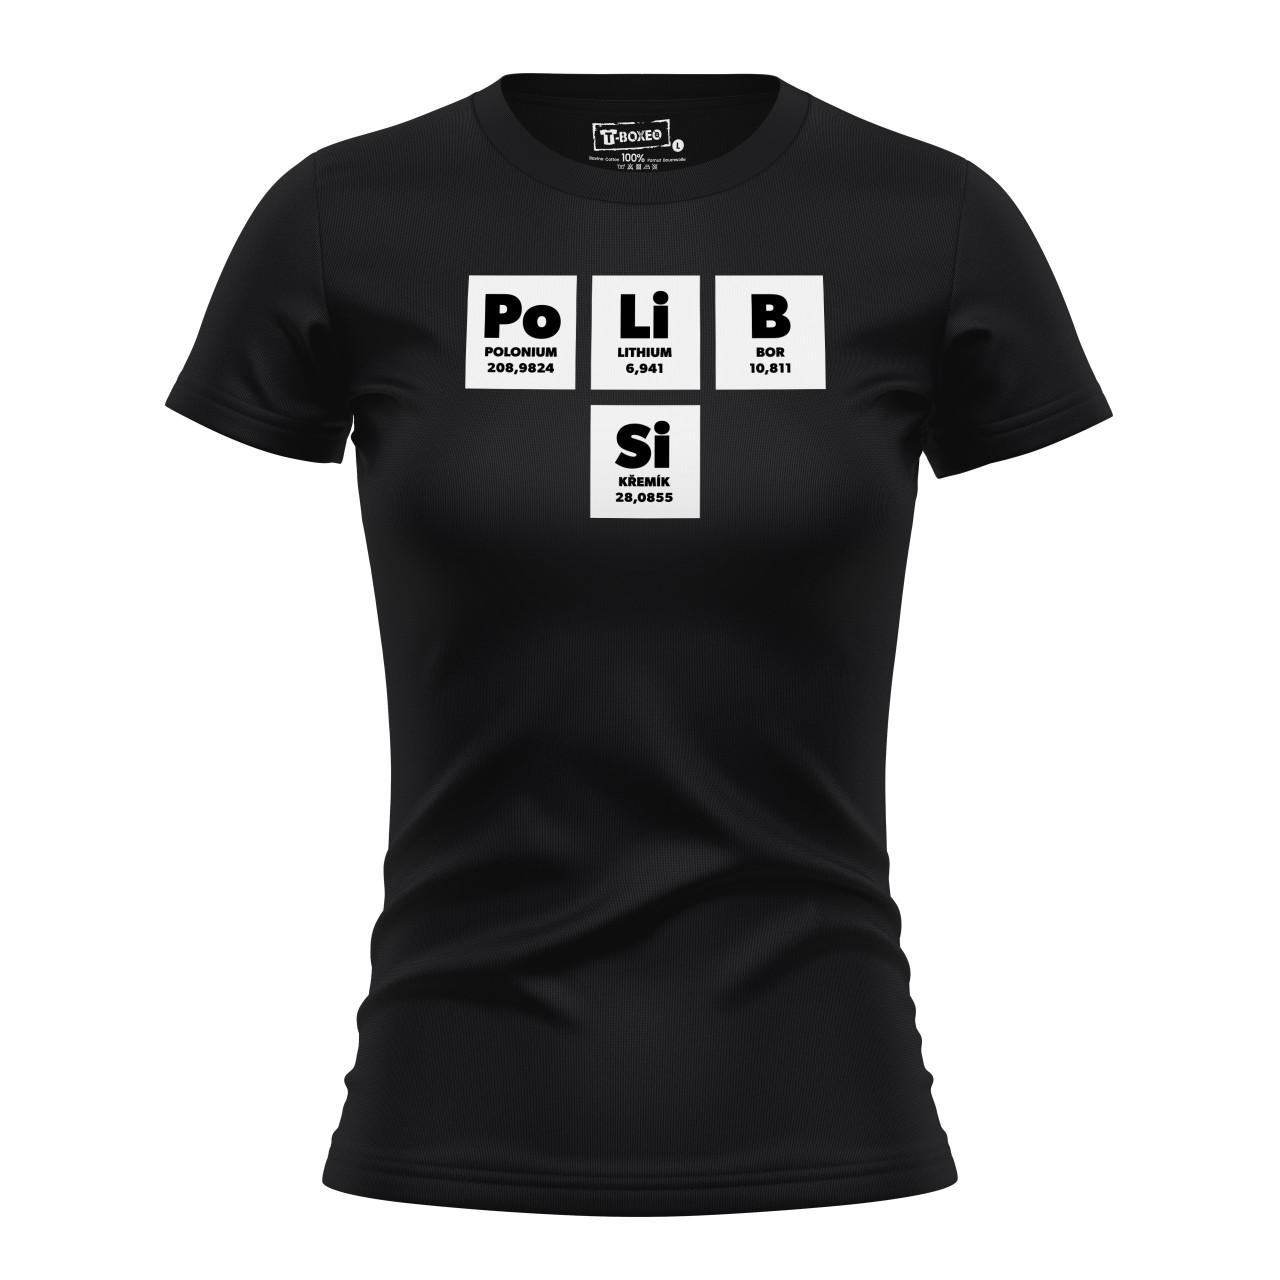 Dámské tričko s potiskem “Po Li B Si”